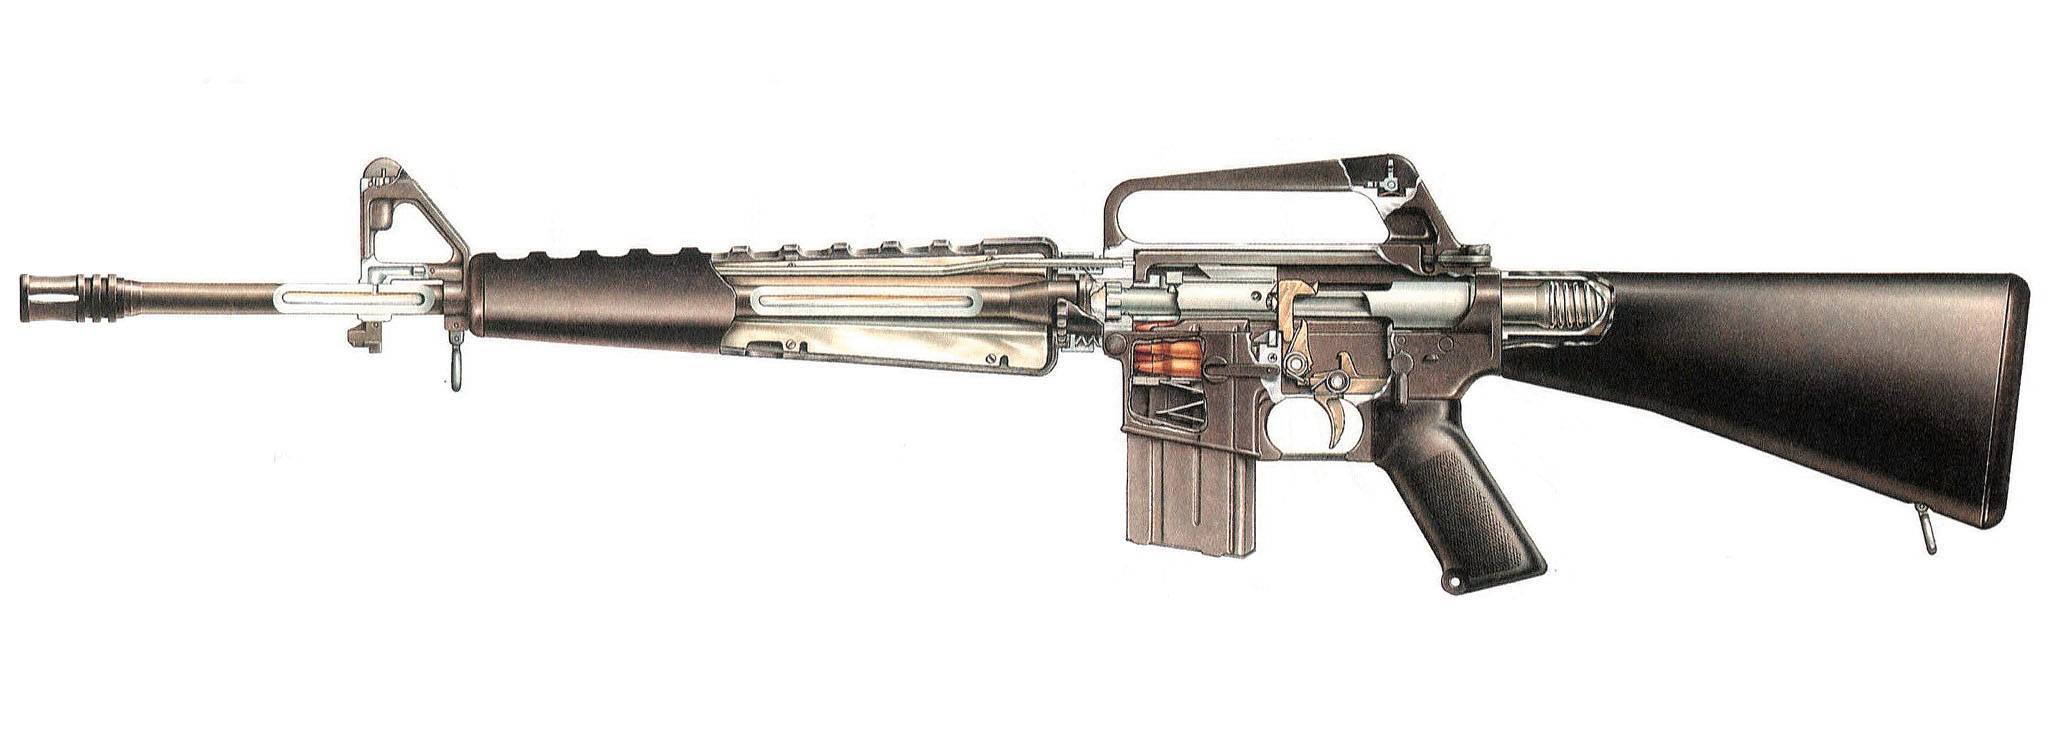 Fn scar штурмовая винтовка - характеристики, фото, ттх